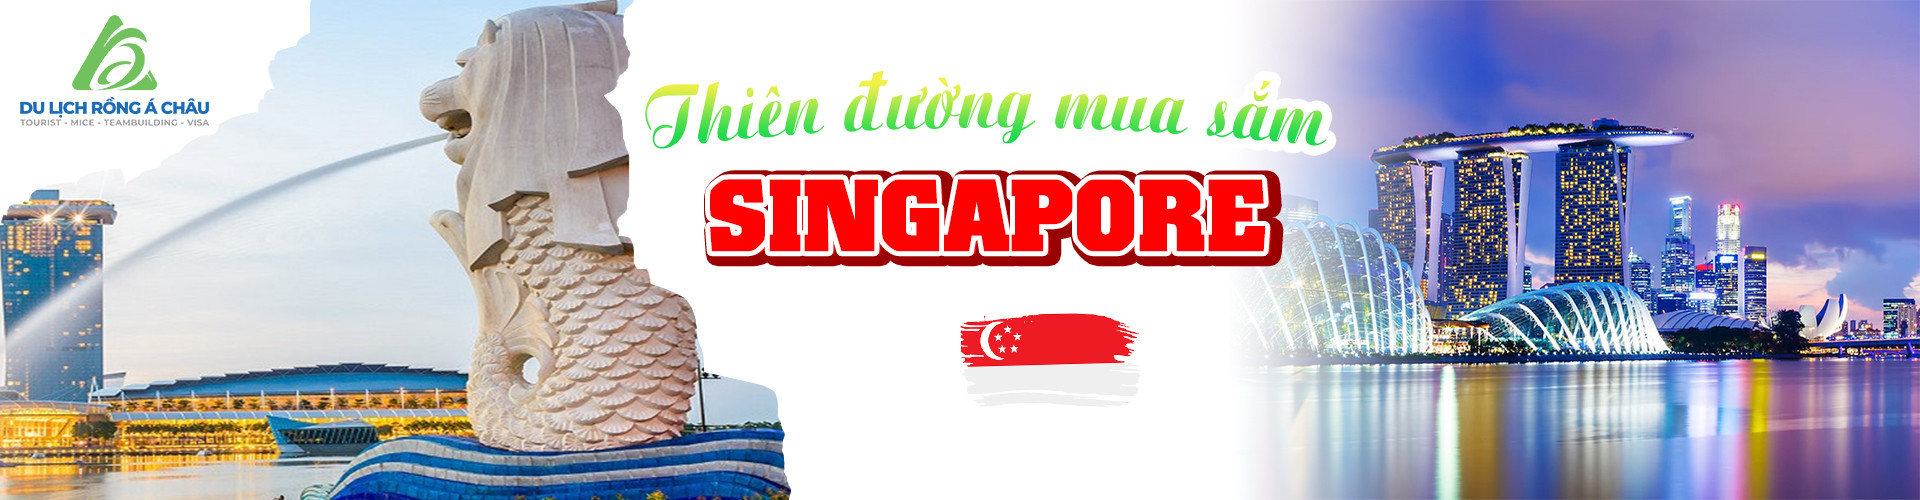 Tour singapore